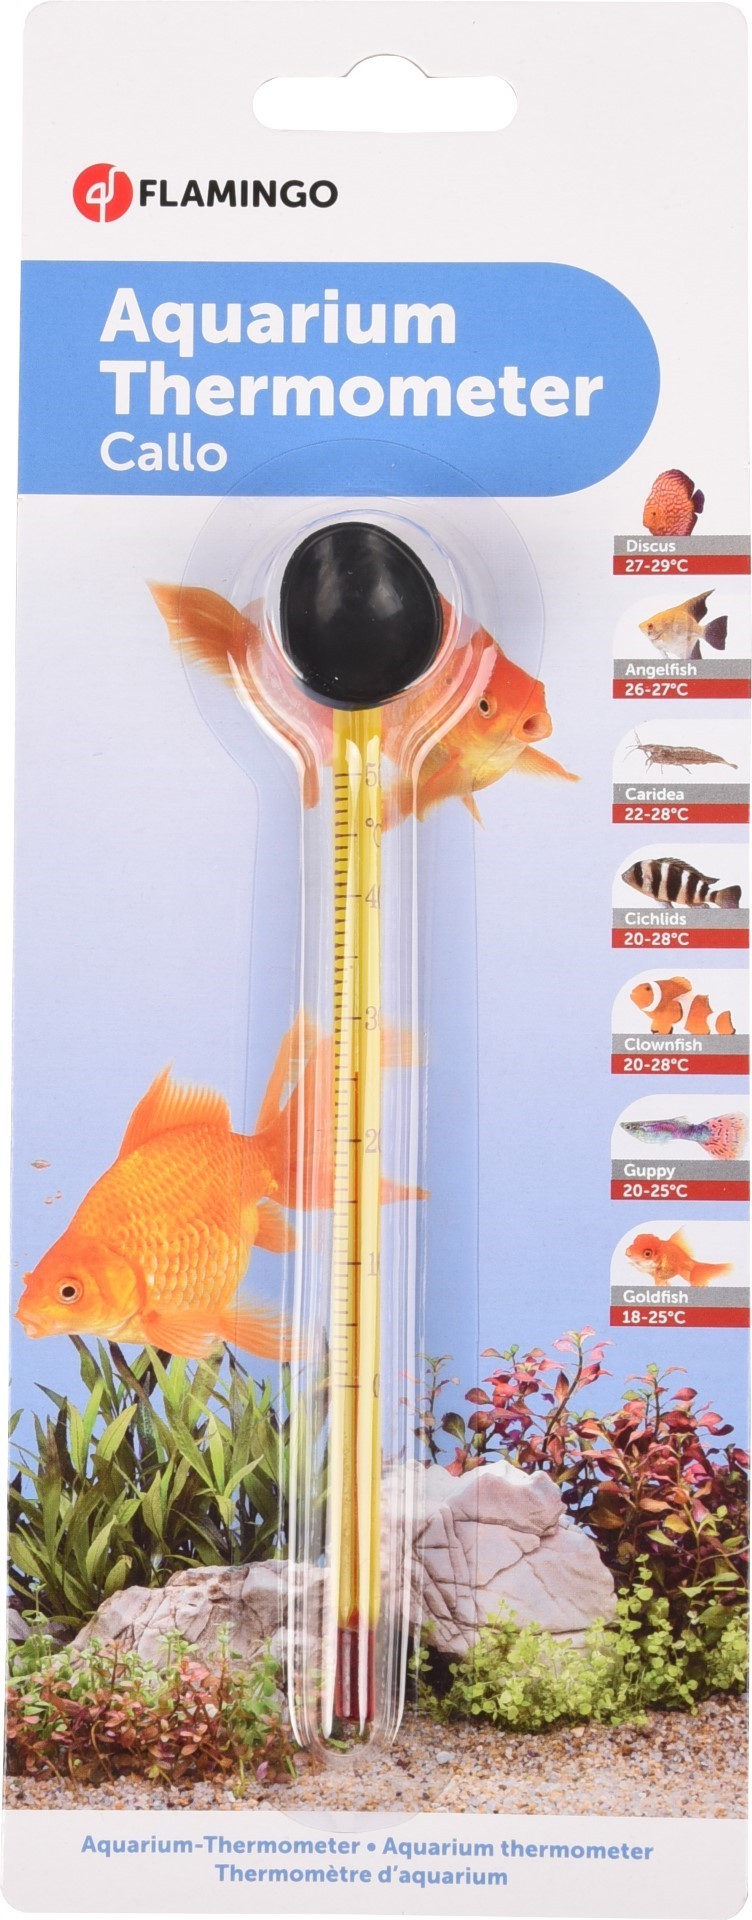 Aquariumthermometer callo